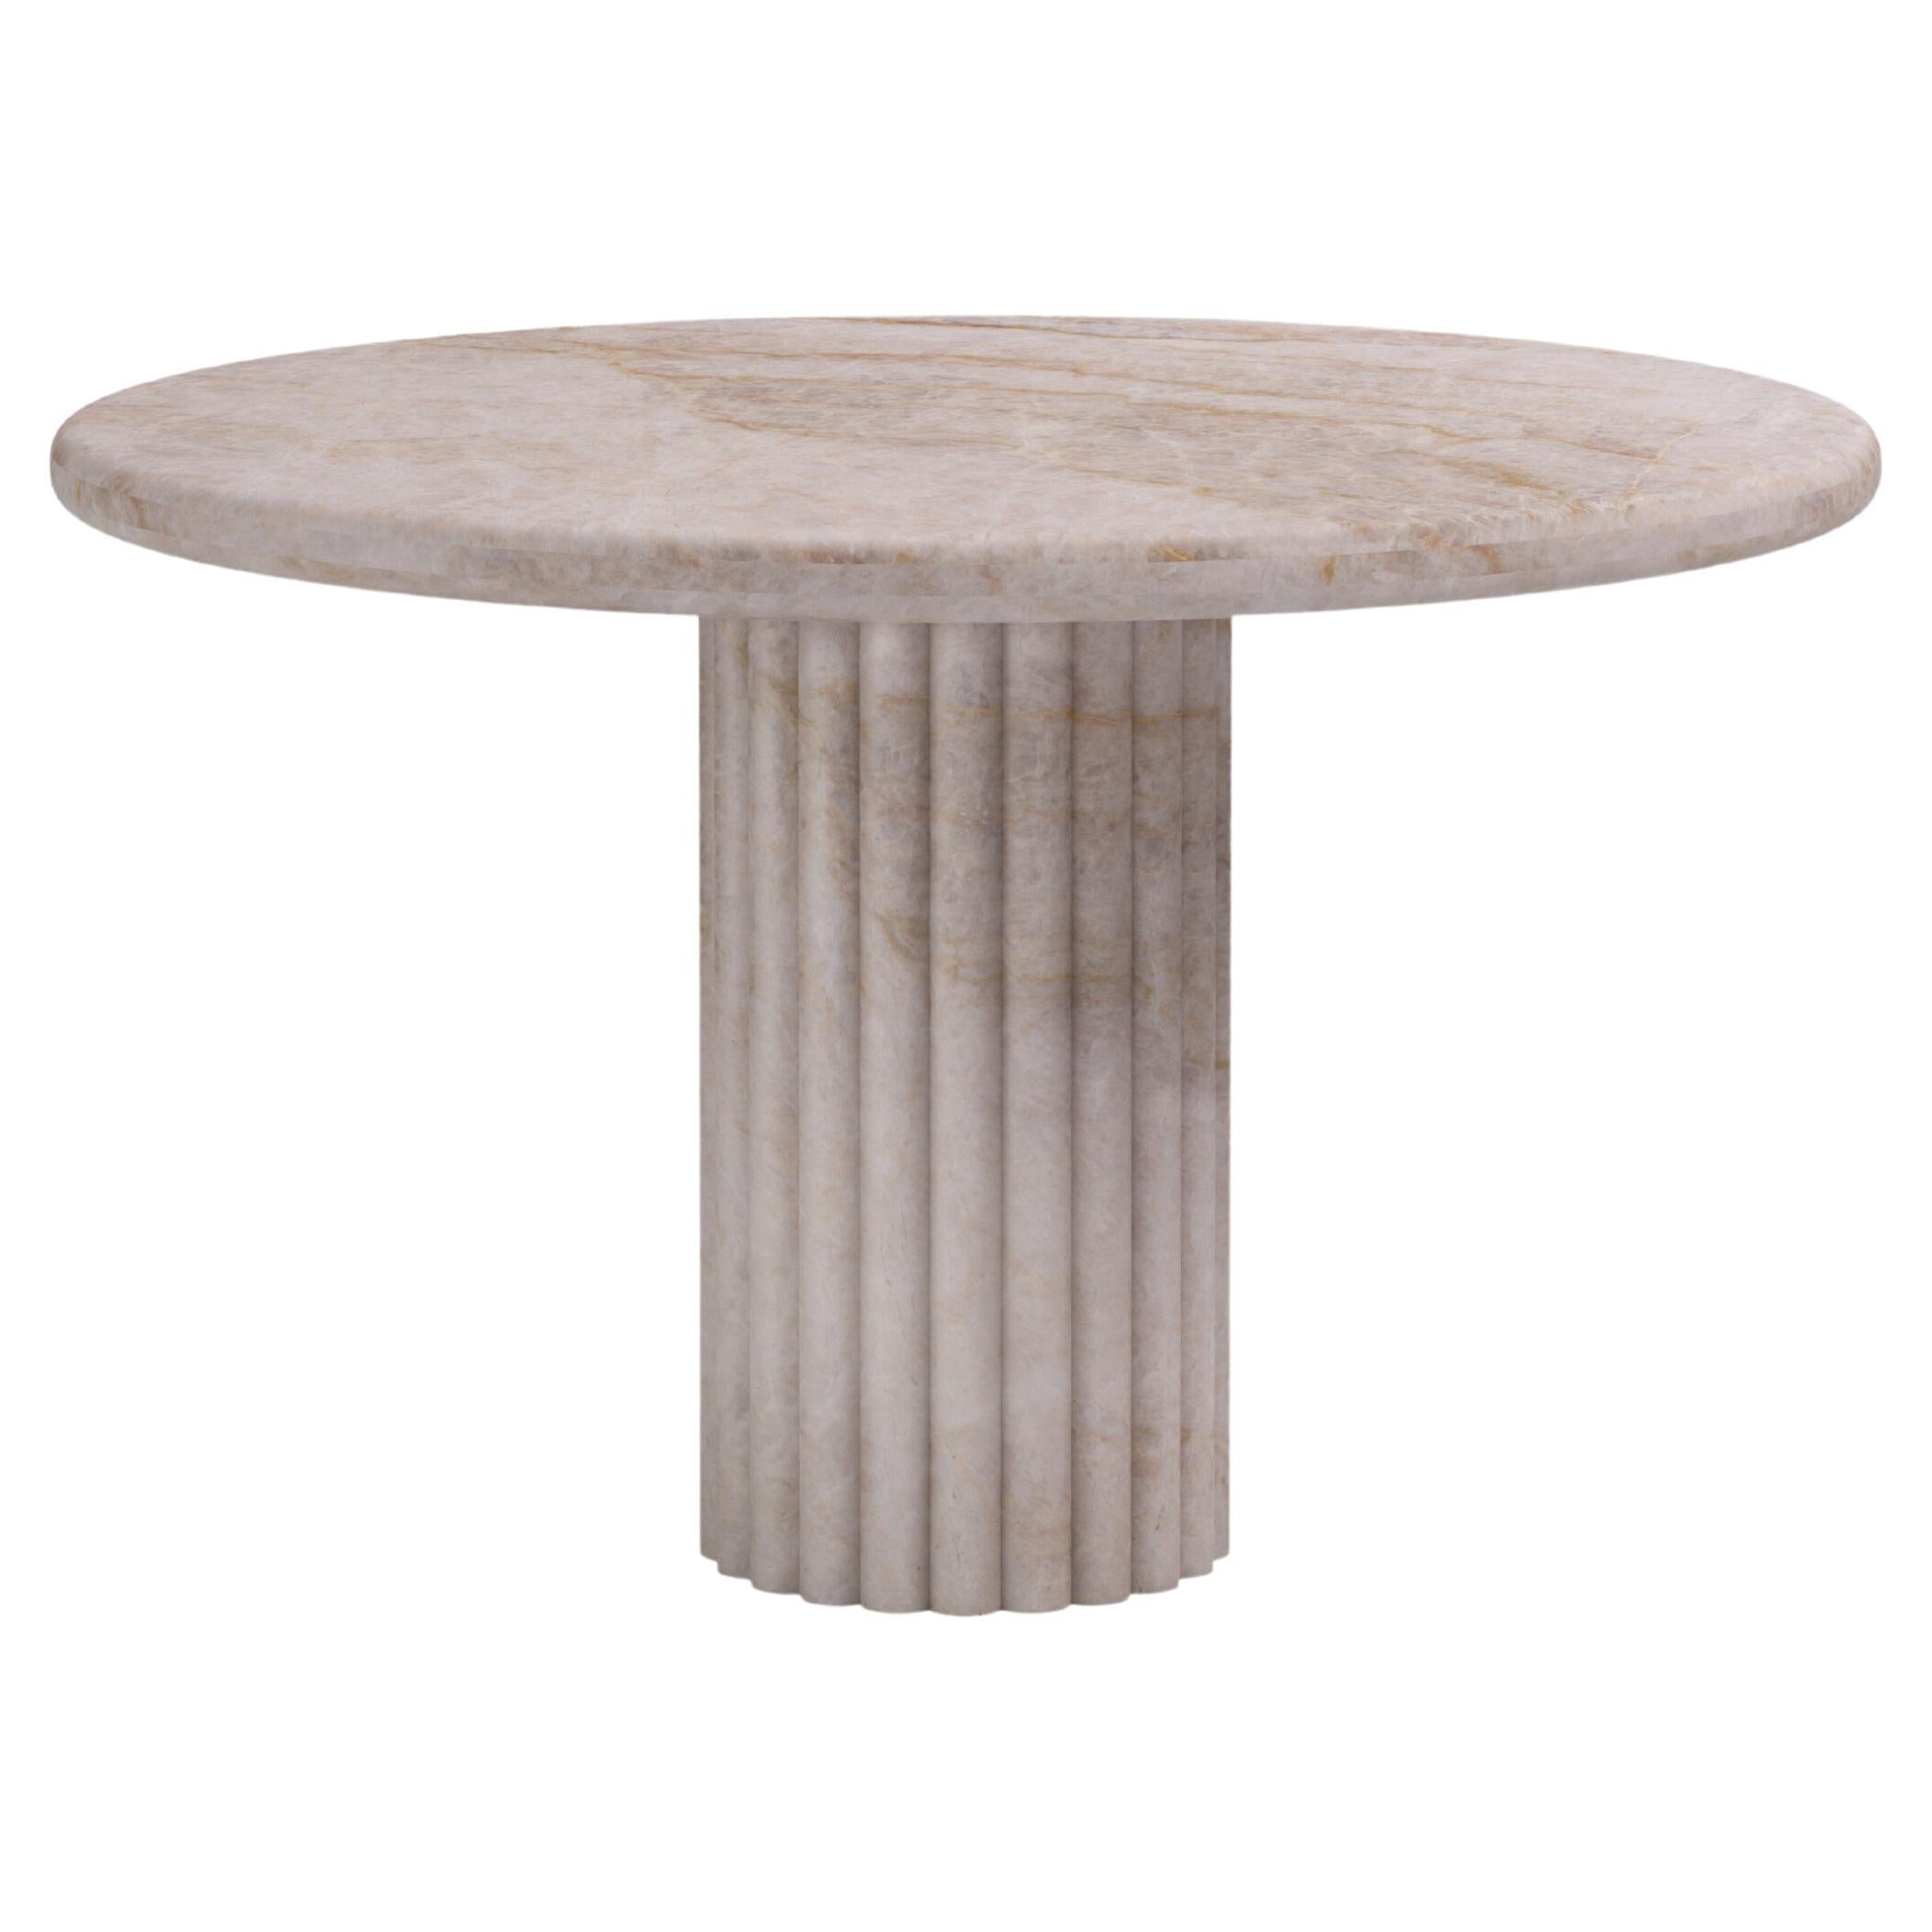 FORM(LA) Fluta Round Dining Table 60”L x 60”W x 30”H Taj Mahal Quartzite